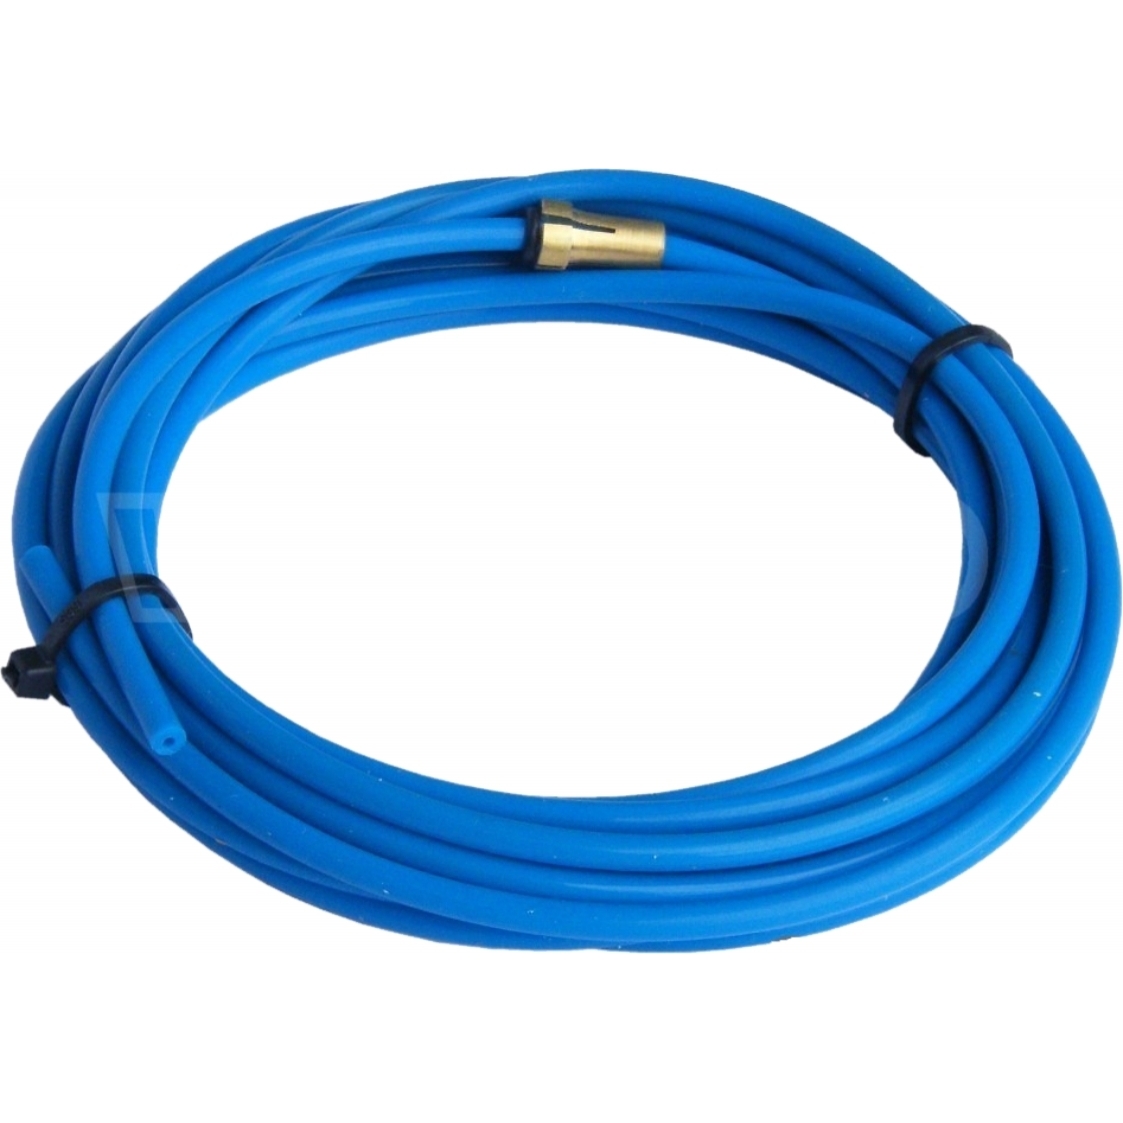 Teflonová trubička BINZEL - modrá - pro drát 0,6 - 0,8 mm - 1,5 x 4,0 - 3 metry